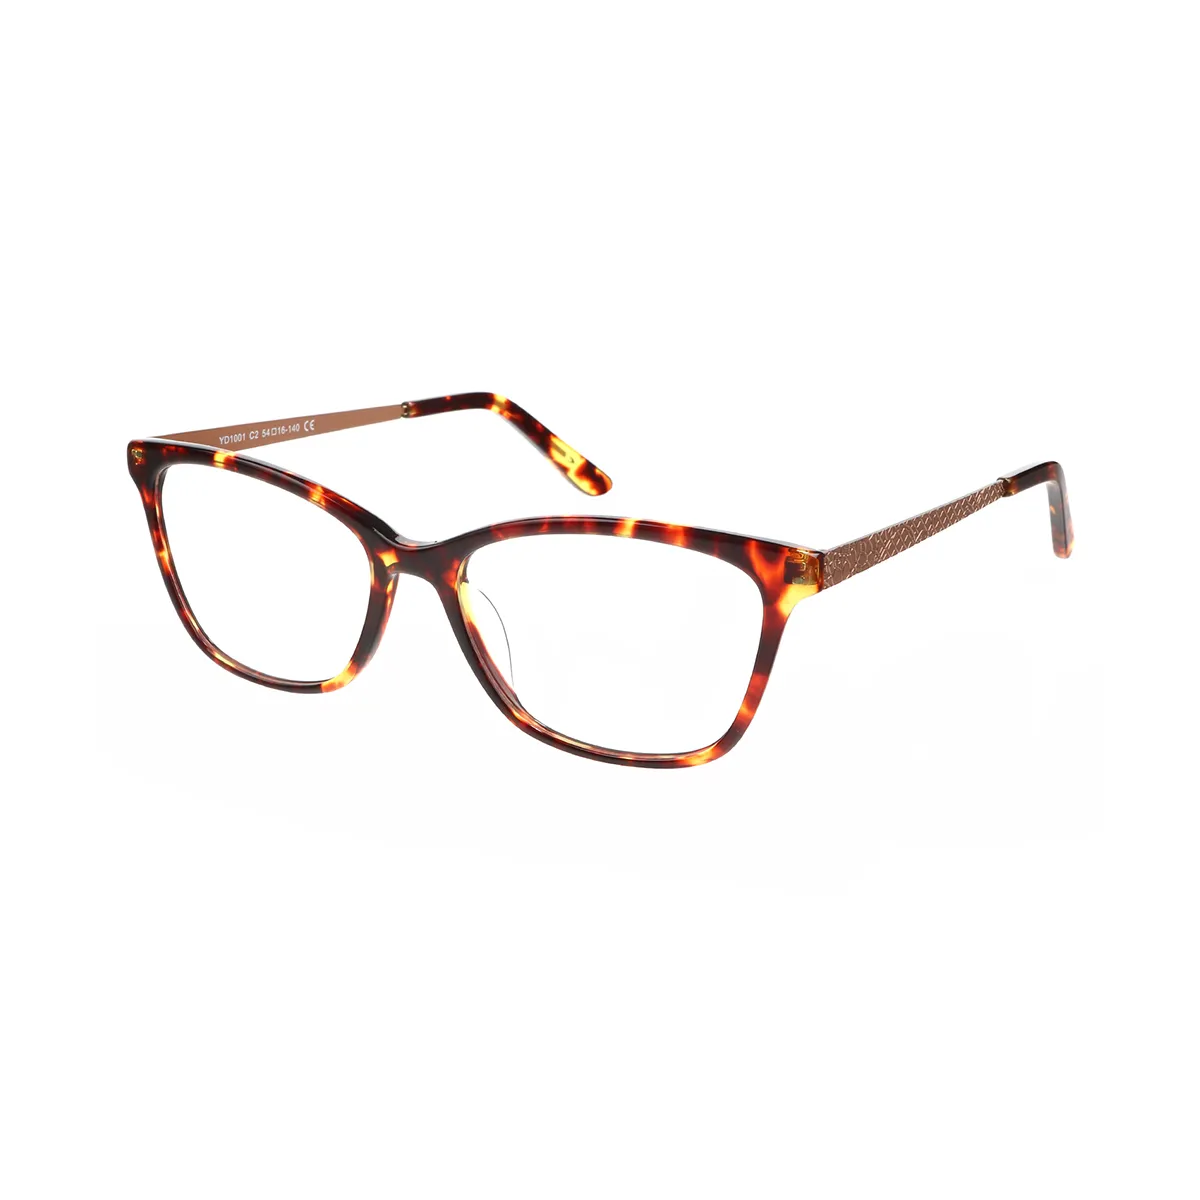 Serena - Rectangle Tortoiseshell Glasses for Women